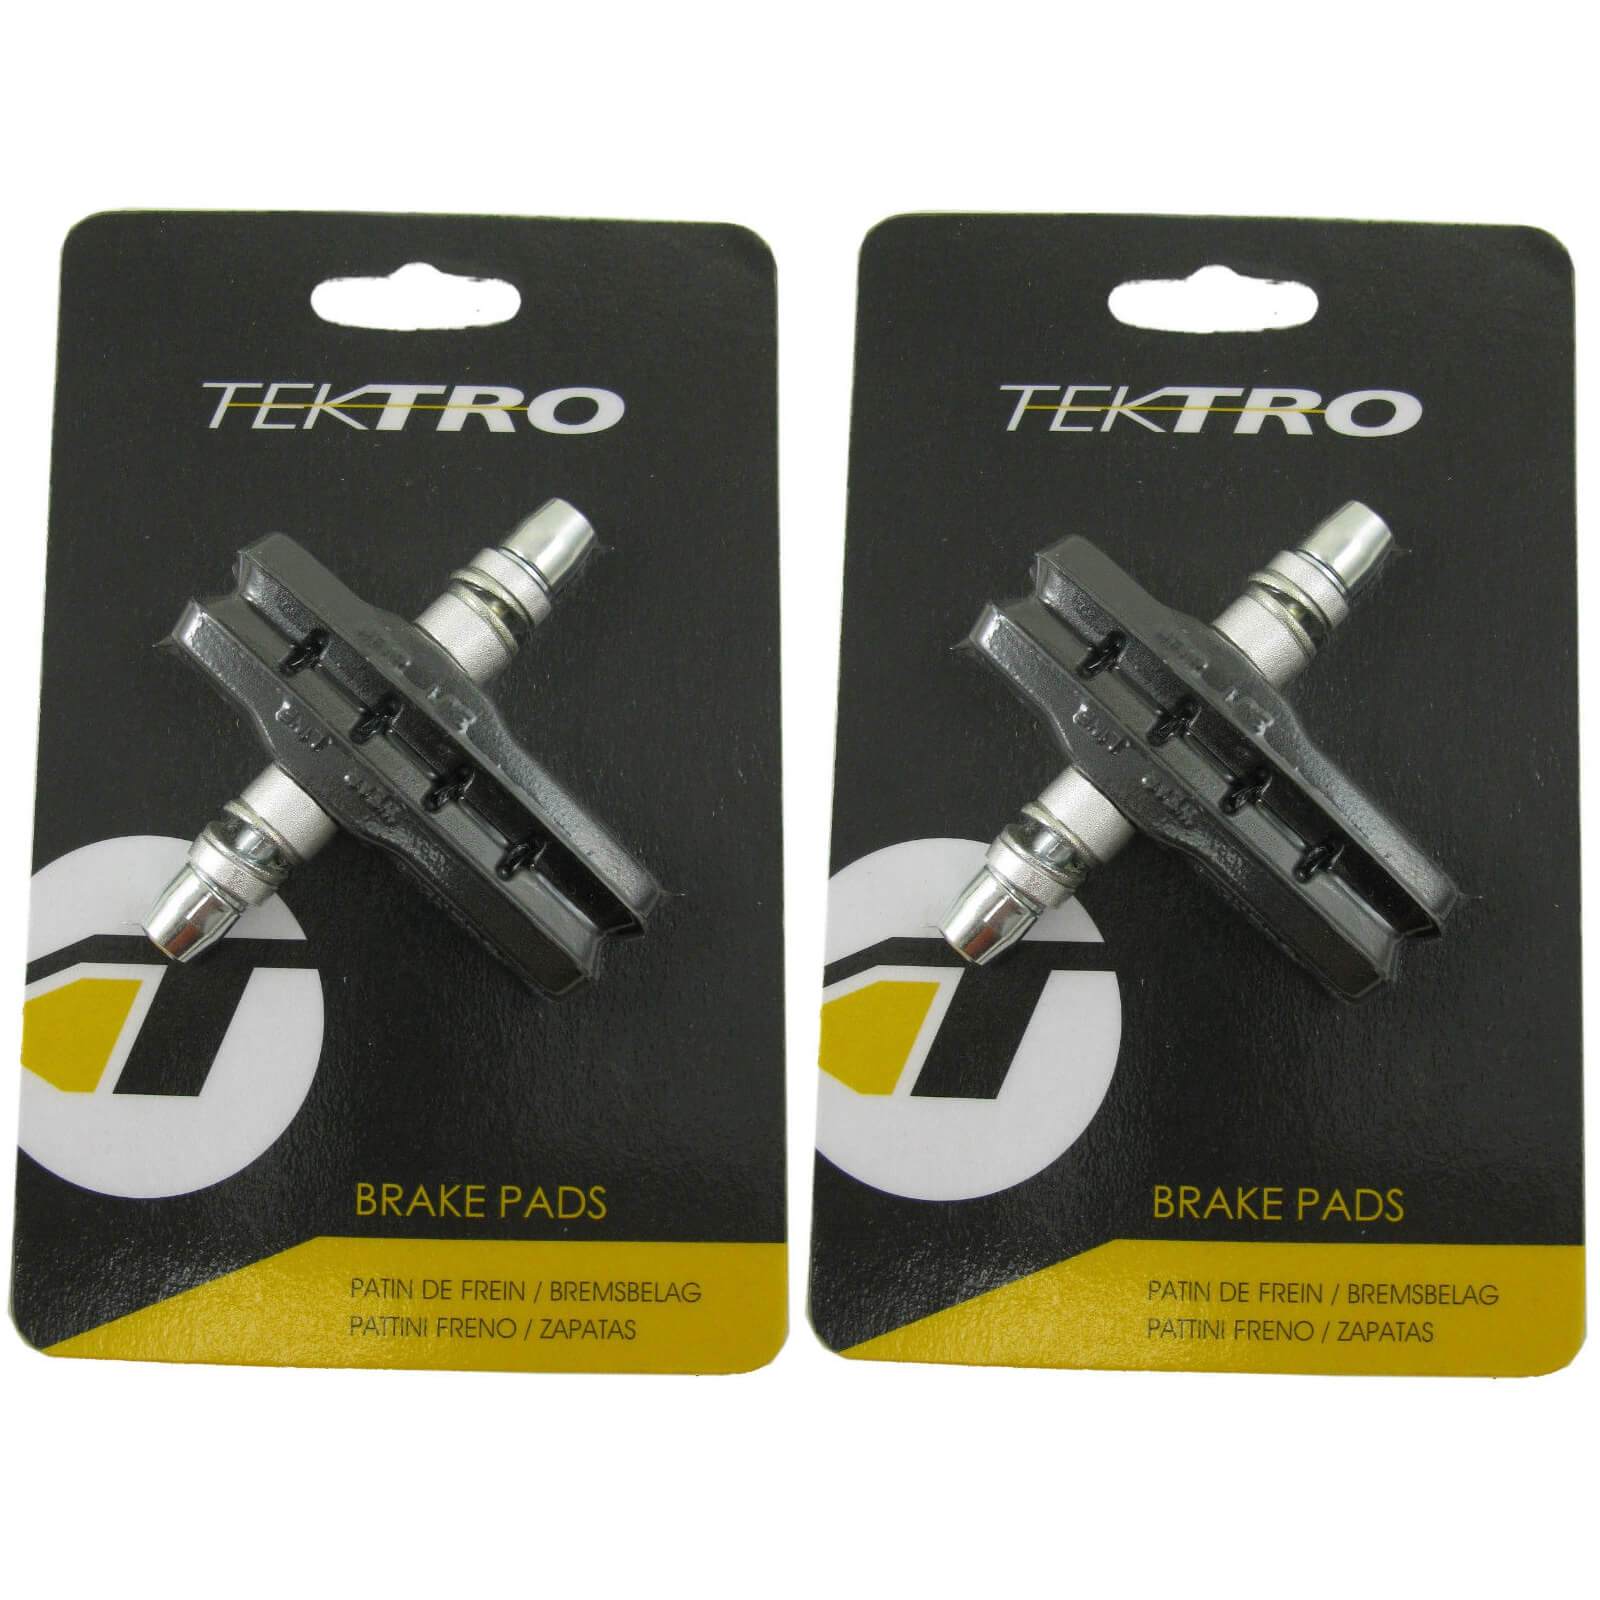 Tektro 72mm 830.12 V-Brake Pads - TheBikesmiths